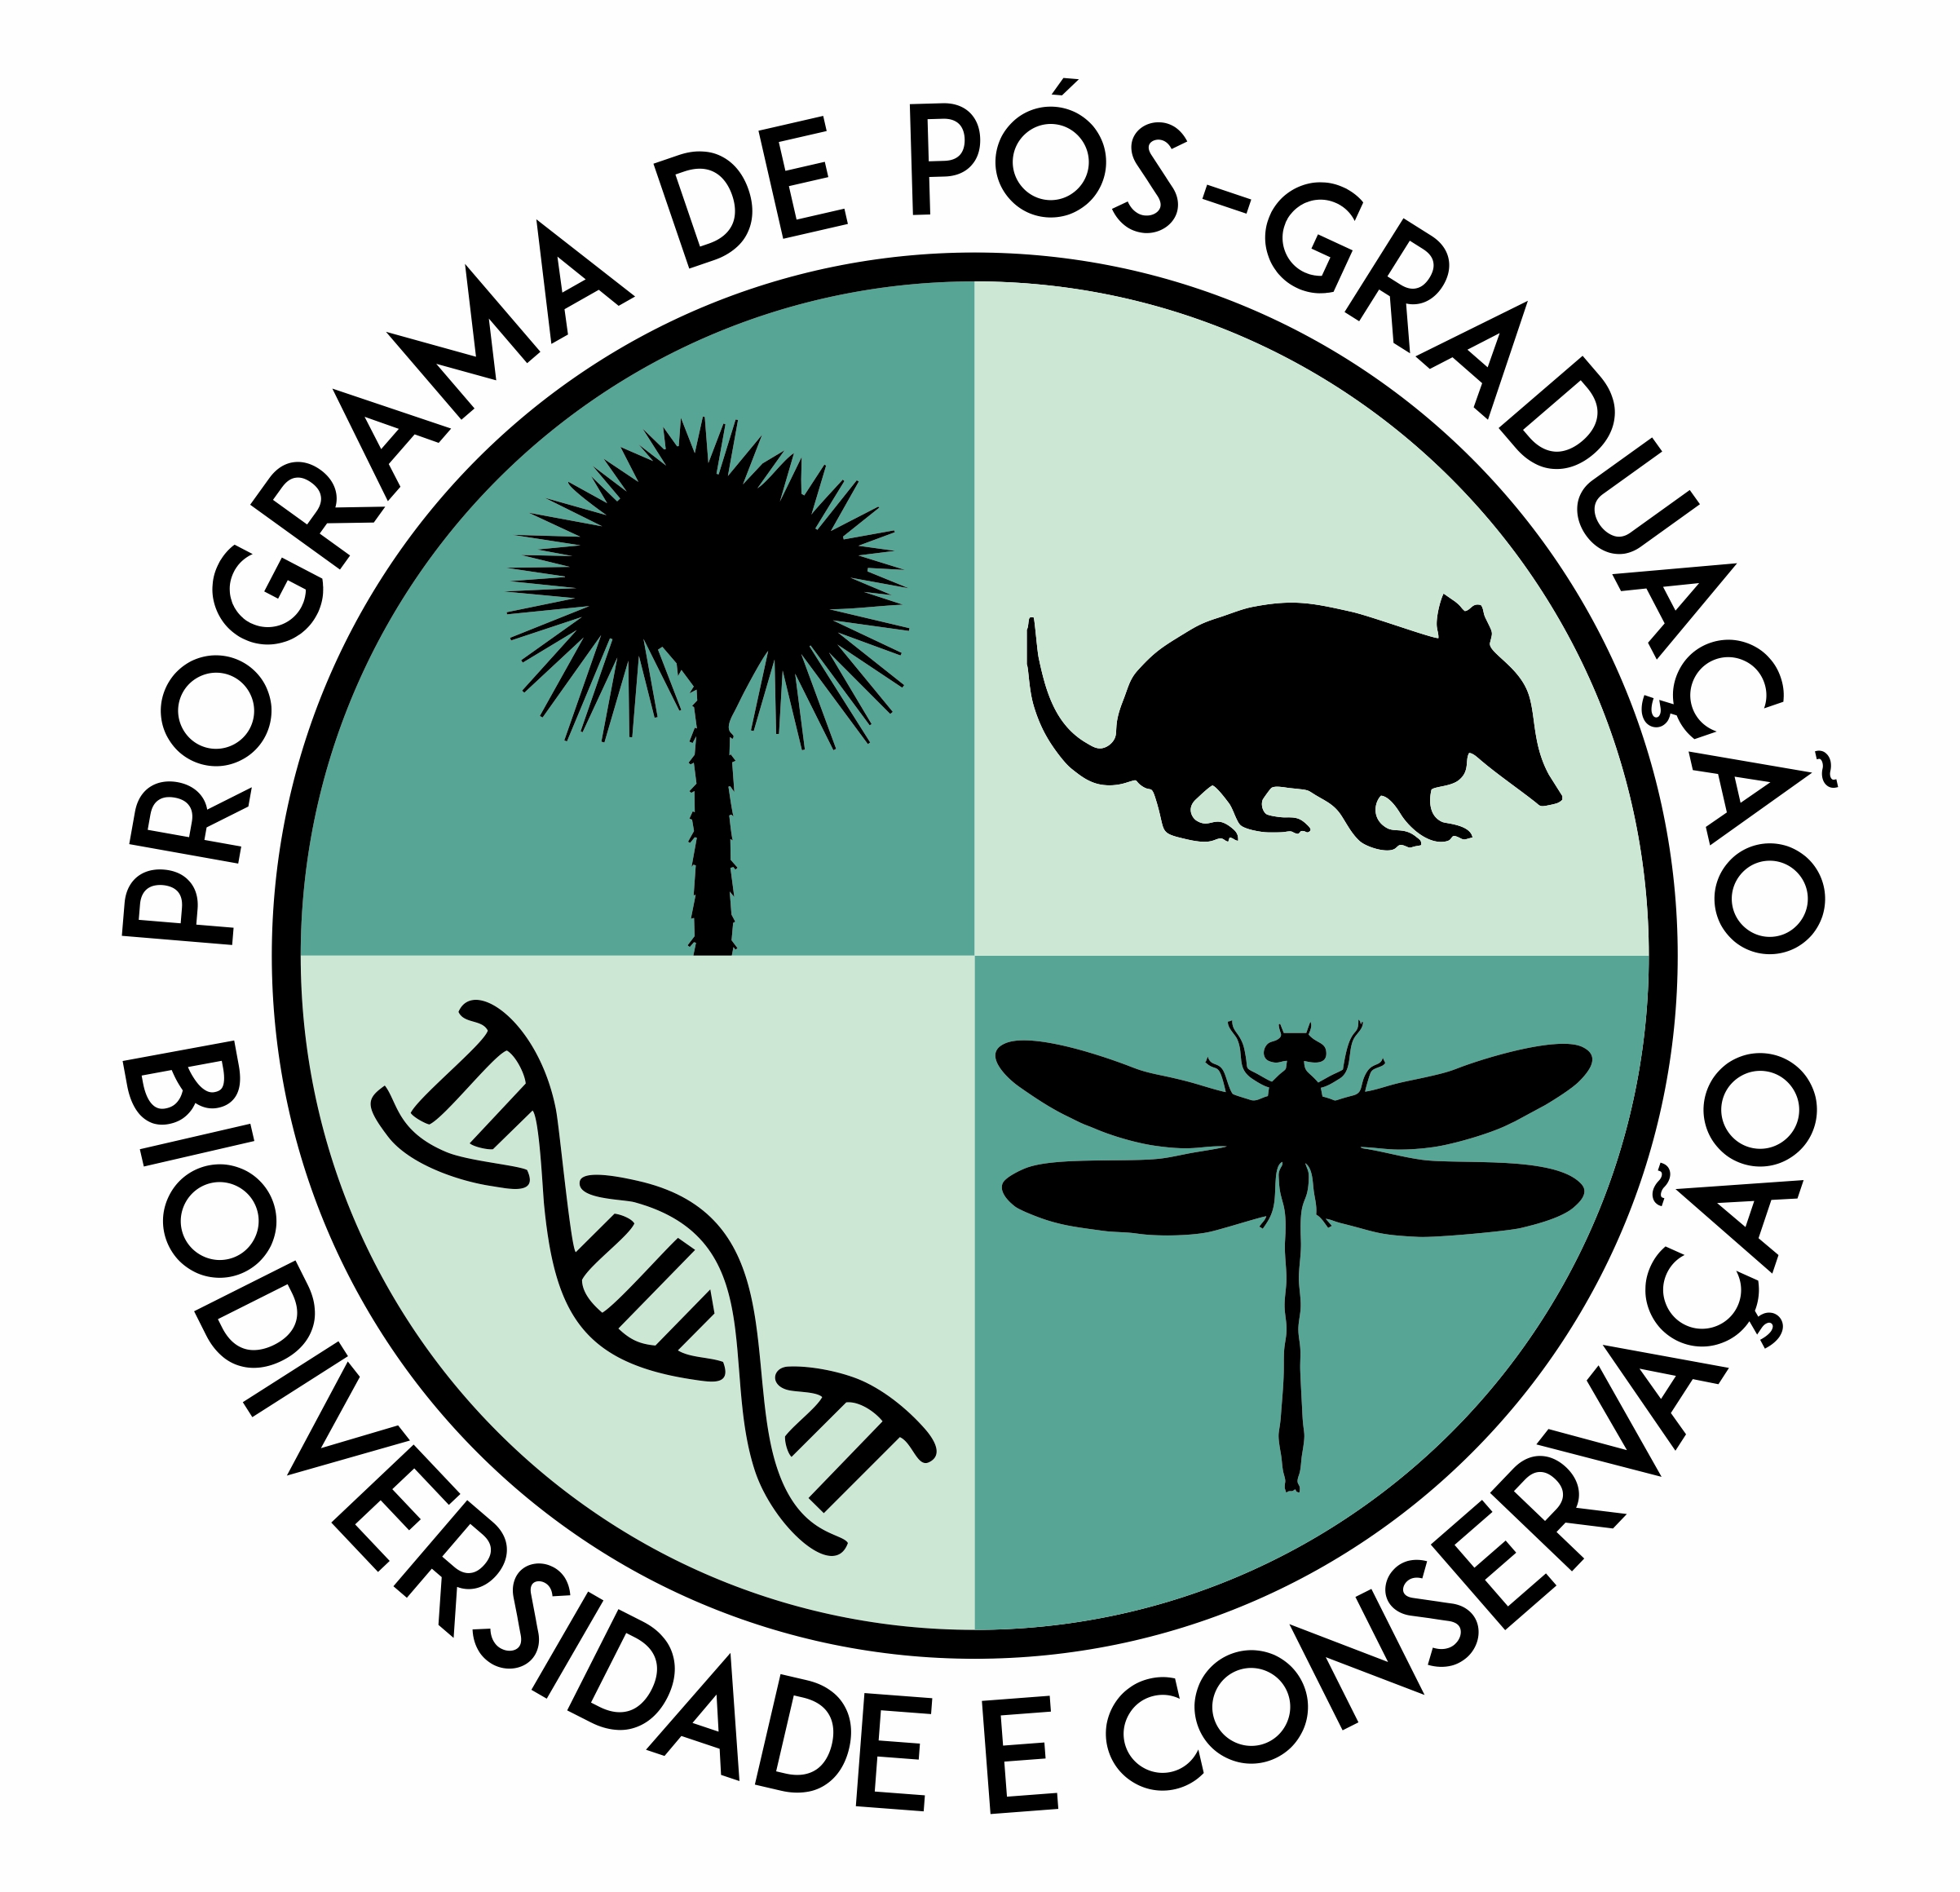 Programa de Pós-Graduação em Genética, Biodiversidade e Conservação